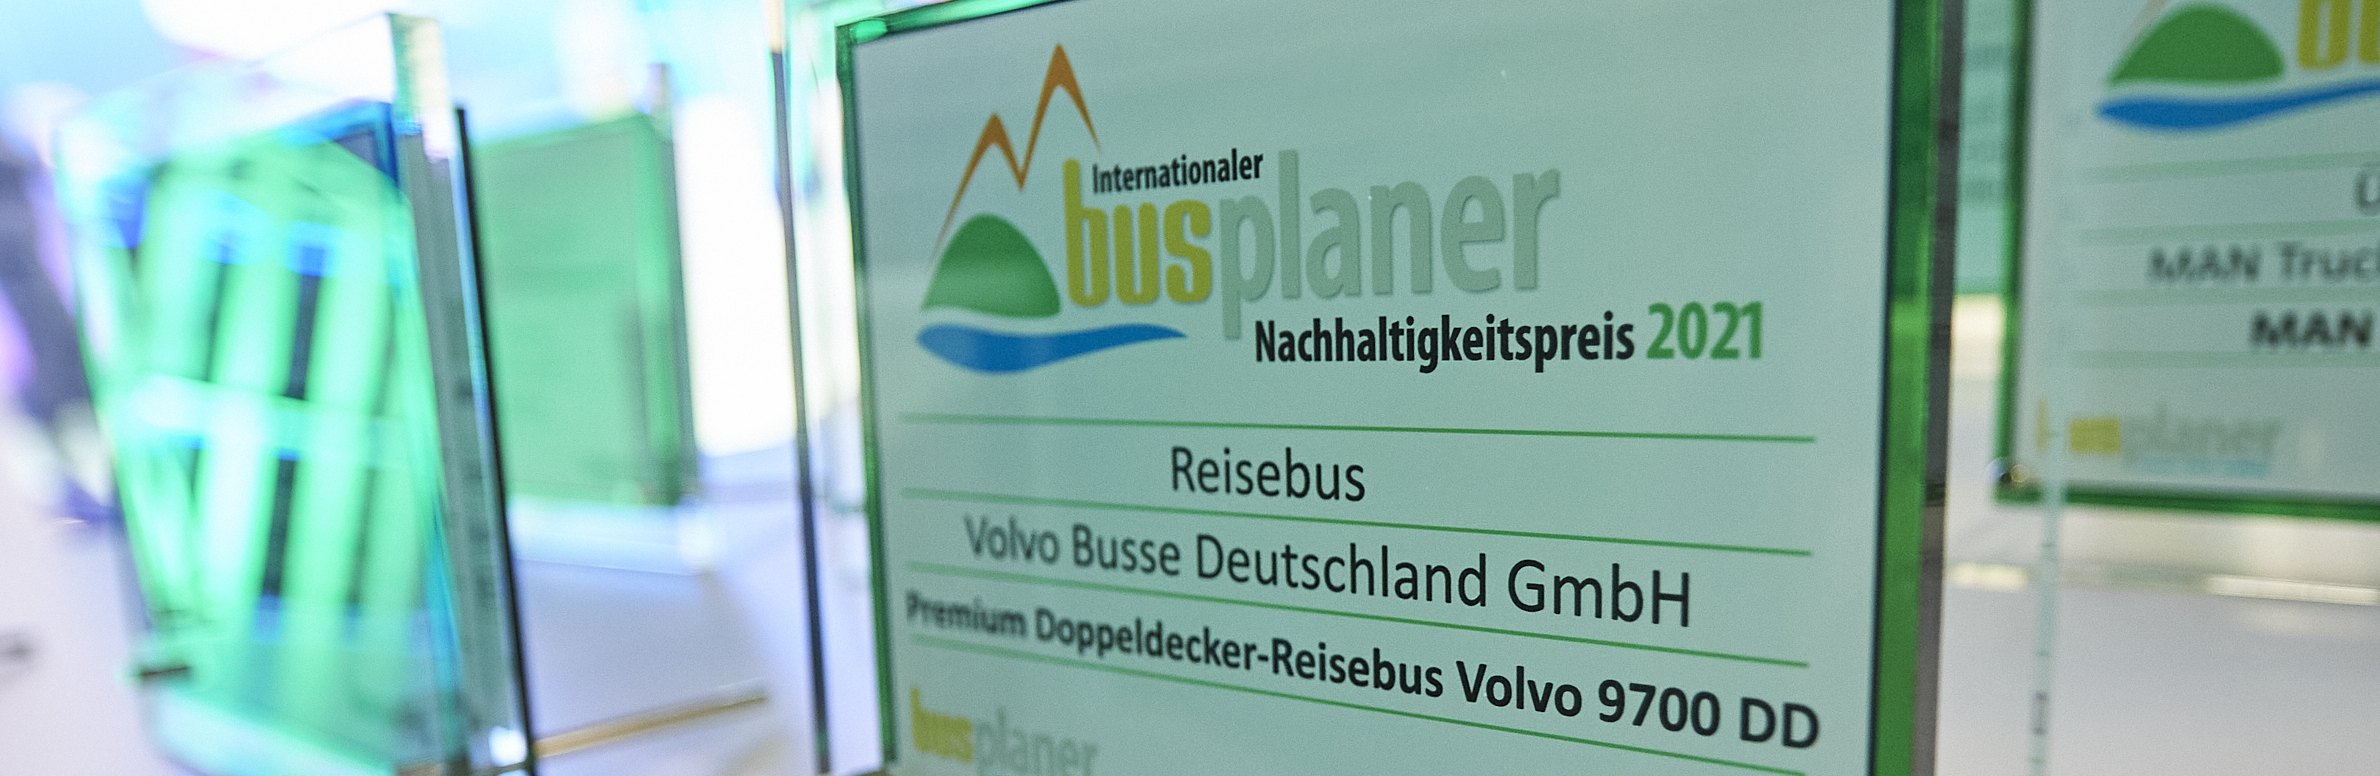 Premium-Doppeldecker Volvo 9700 DD erhält Internationalen busplaner Nachhaltigkeitspreis 2021 | Medienservice für Journalisten